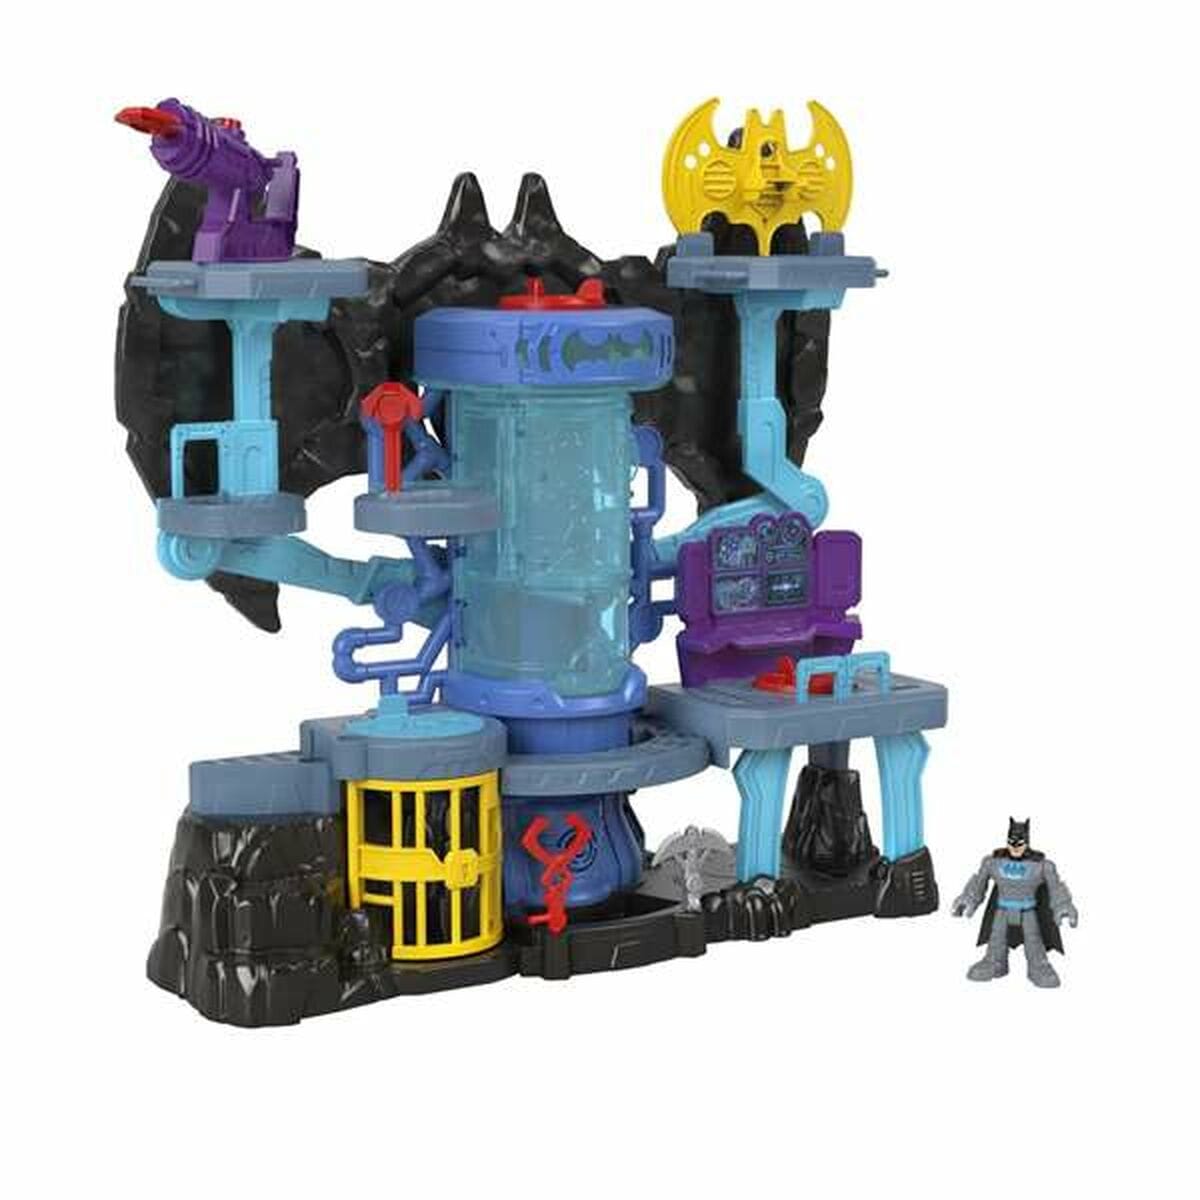 Batman Spielzeug | Kostüme > Spielzeug und Spiele > Action-Figuren Playset Batman Super Friends Bat-tech Batcave Lichter mit ton 40 x 38 cm